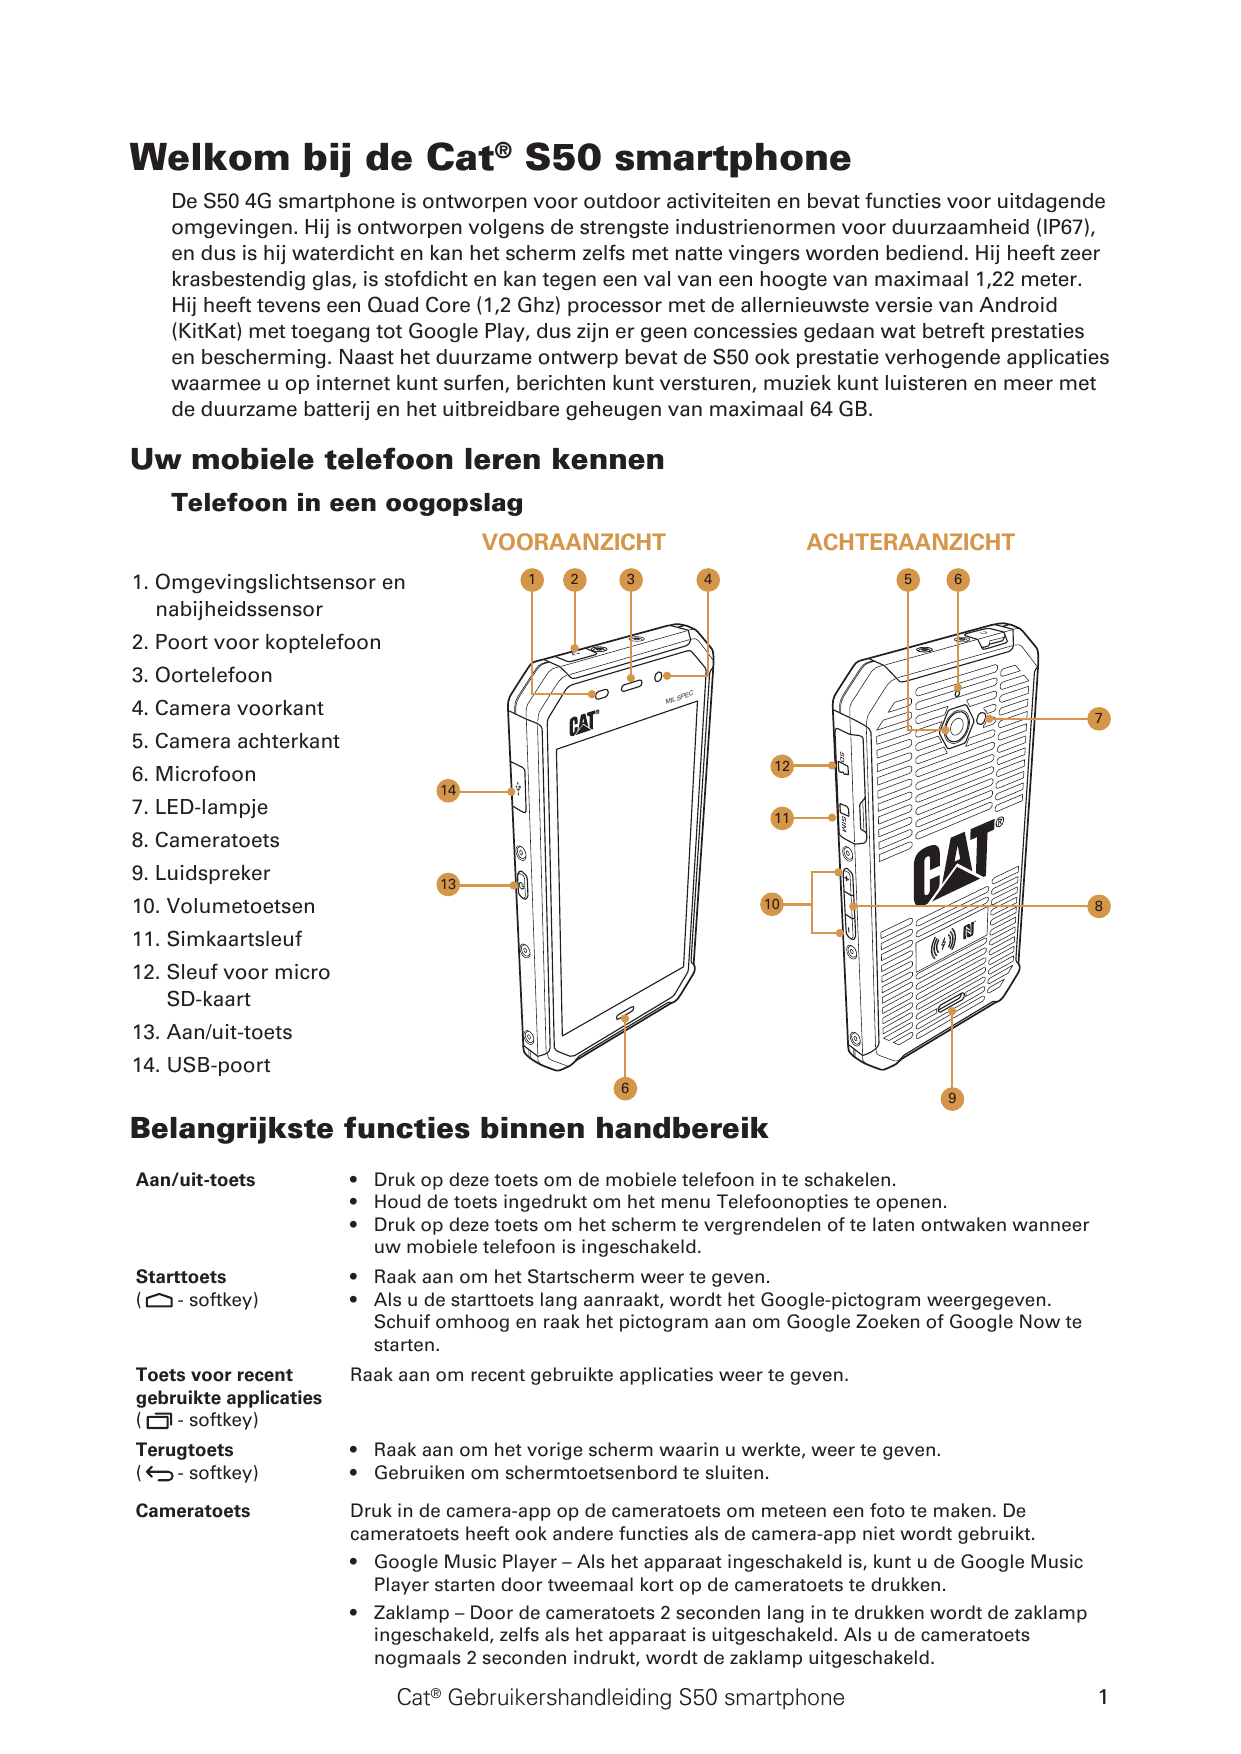 Welkom bij de Cat® S50 smartphoneDe S50 4G smartphone is ontworpen voor outdoor activiteiten en bevat functies voor uitdagendeom